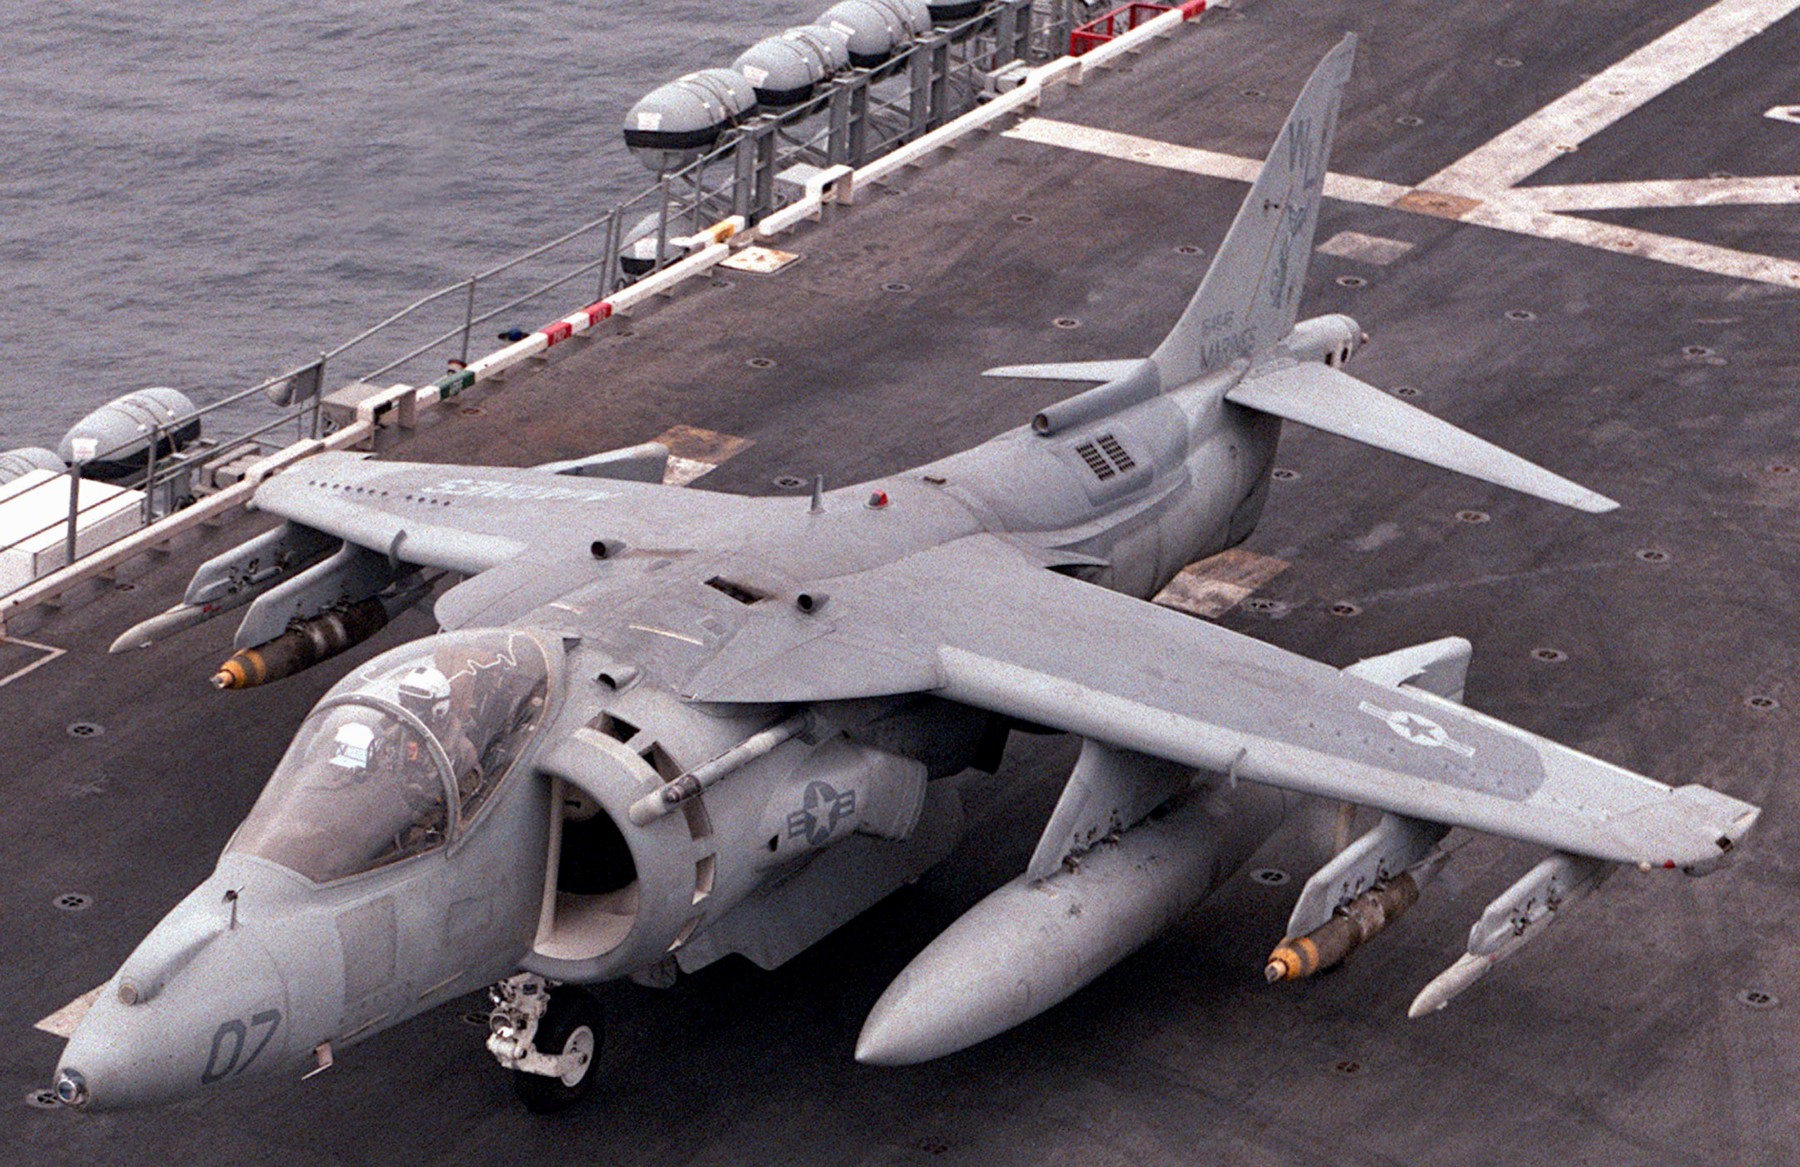 Av 8b. Av-8b Harrier II. Av-8b Harrier. Av-8b Harrier II ТТХ. Штурмовик av-8b «Харриер» II.